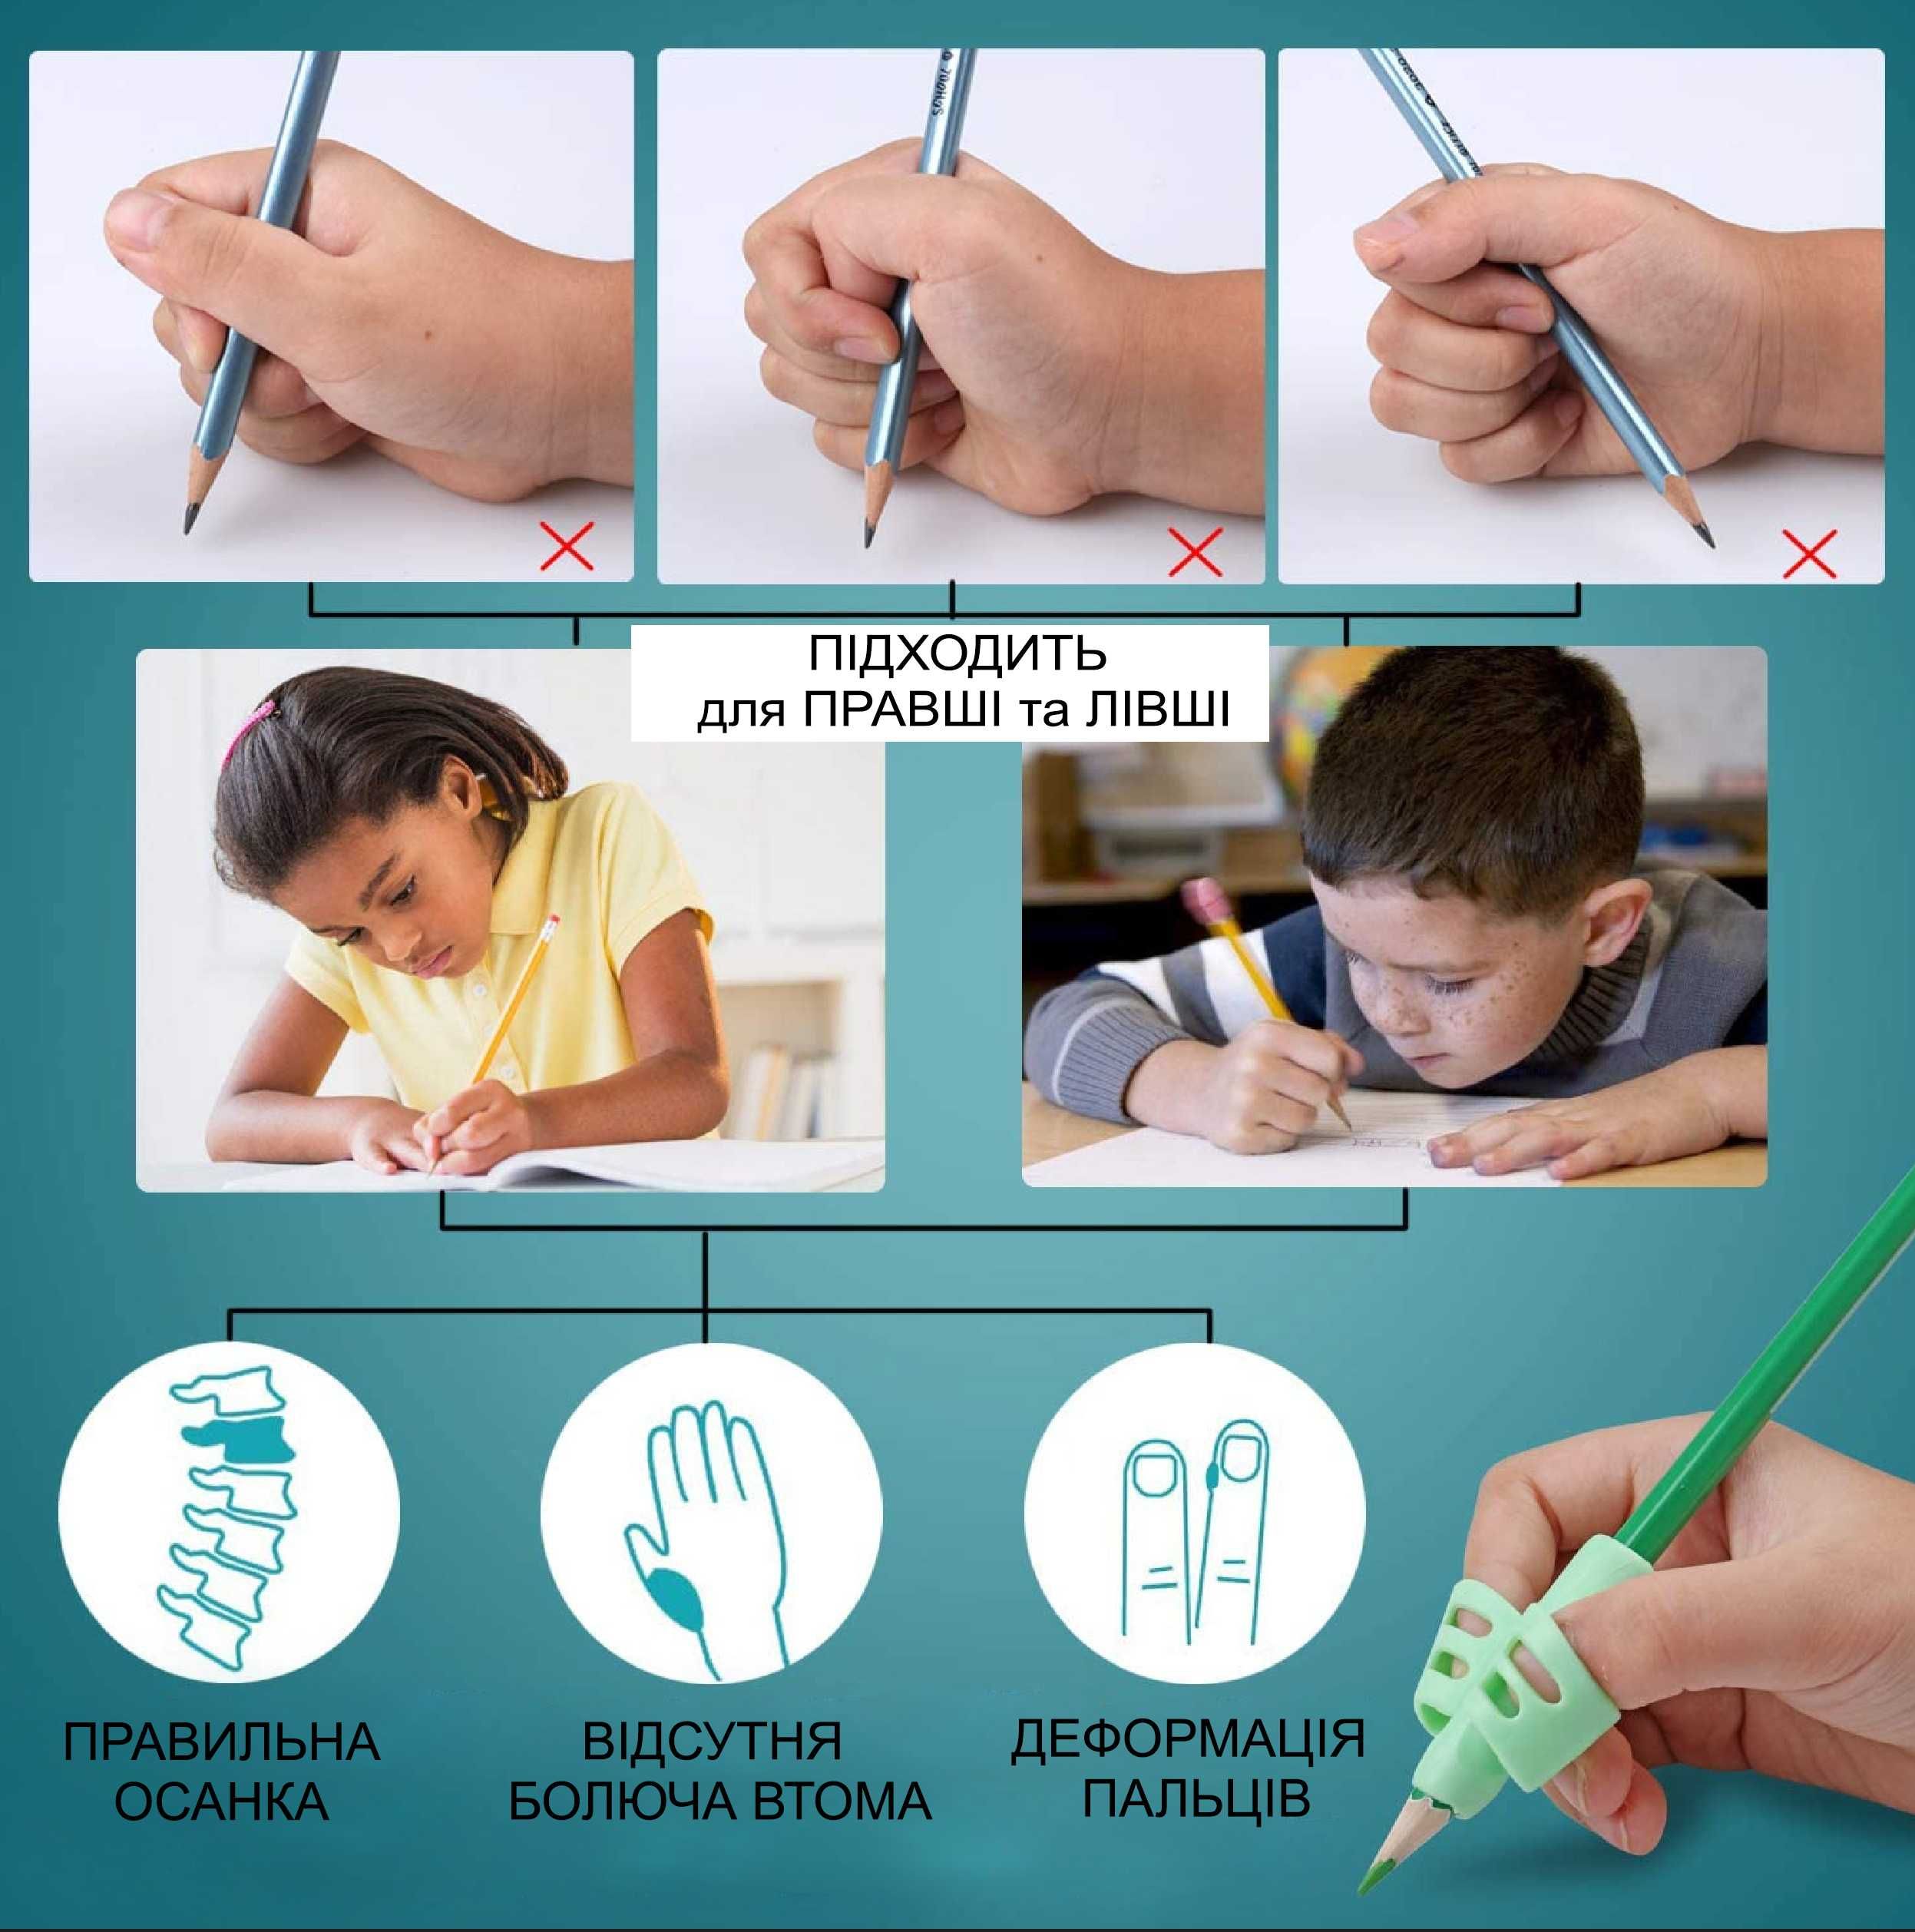 Тренажер  тримач для ручок  та олівців для правильного письма дітям